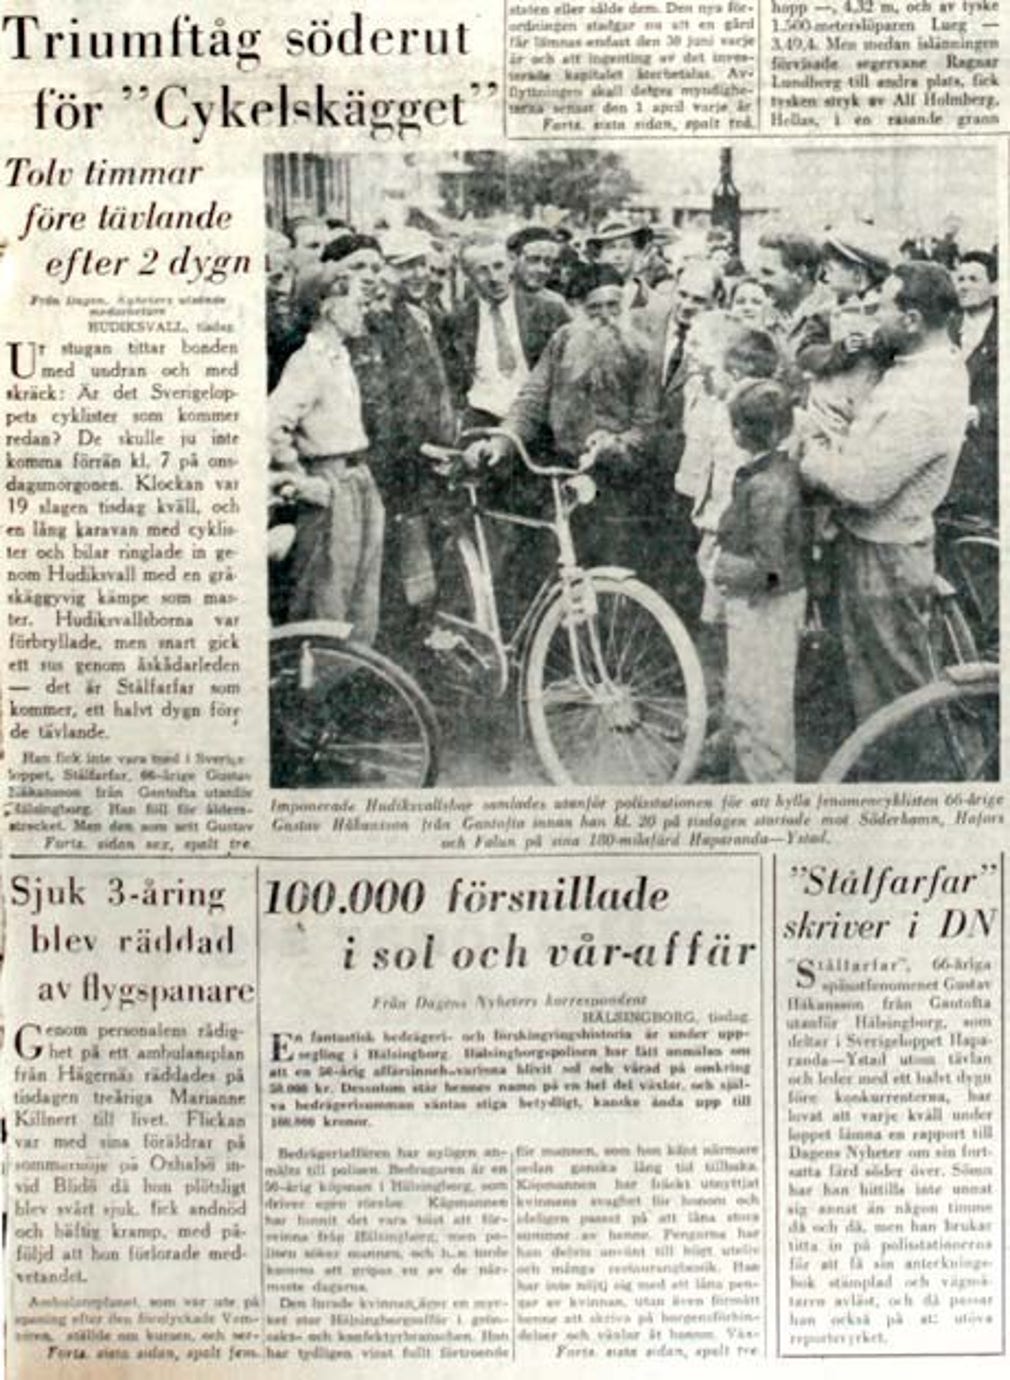 Artikeln om Stålfarfar i Hudiksvall i DN den 4 juli 1951.